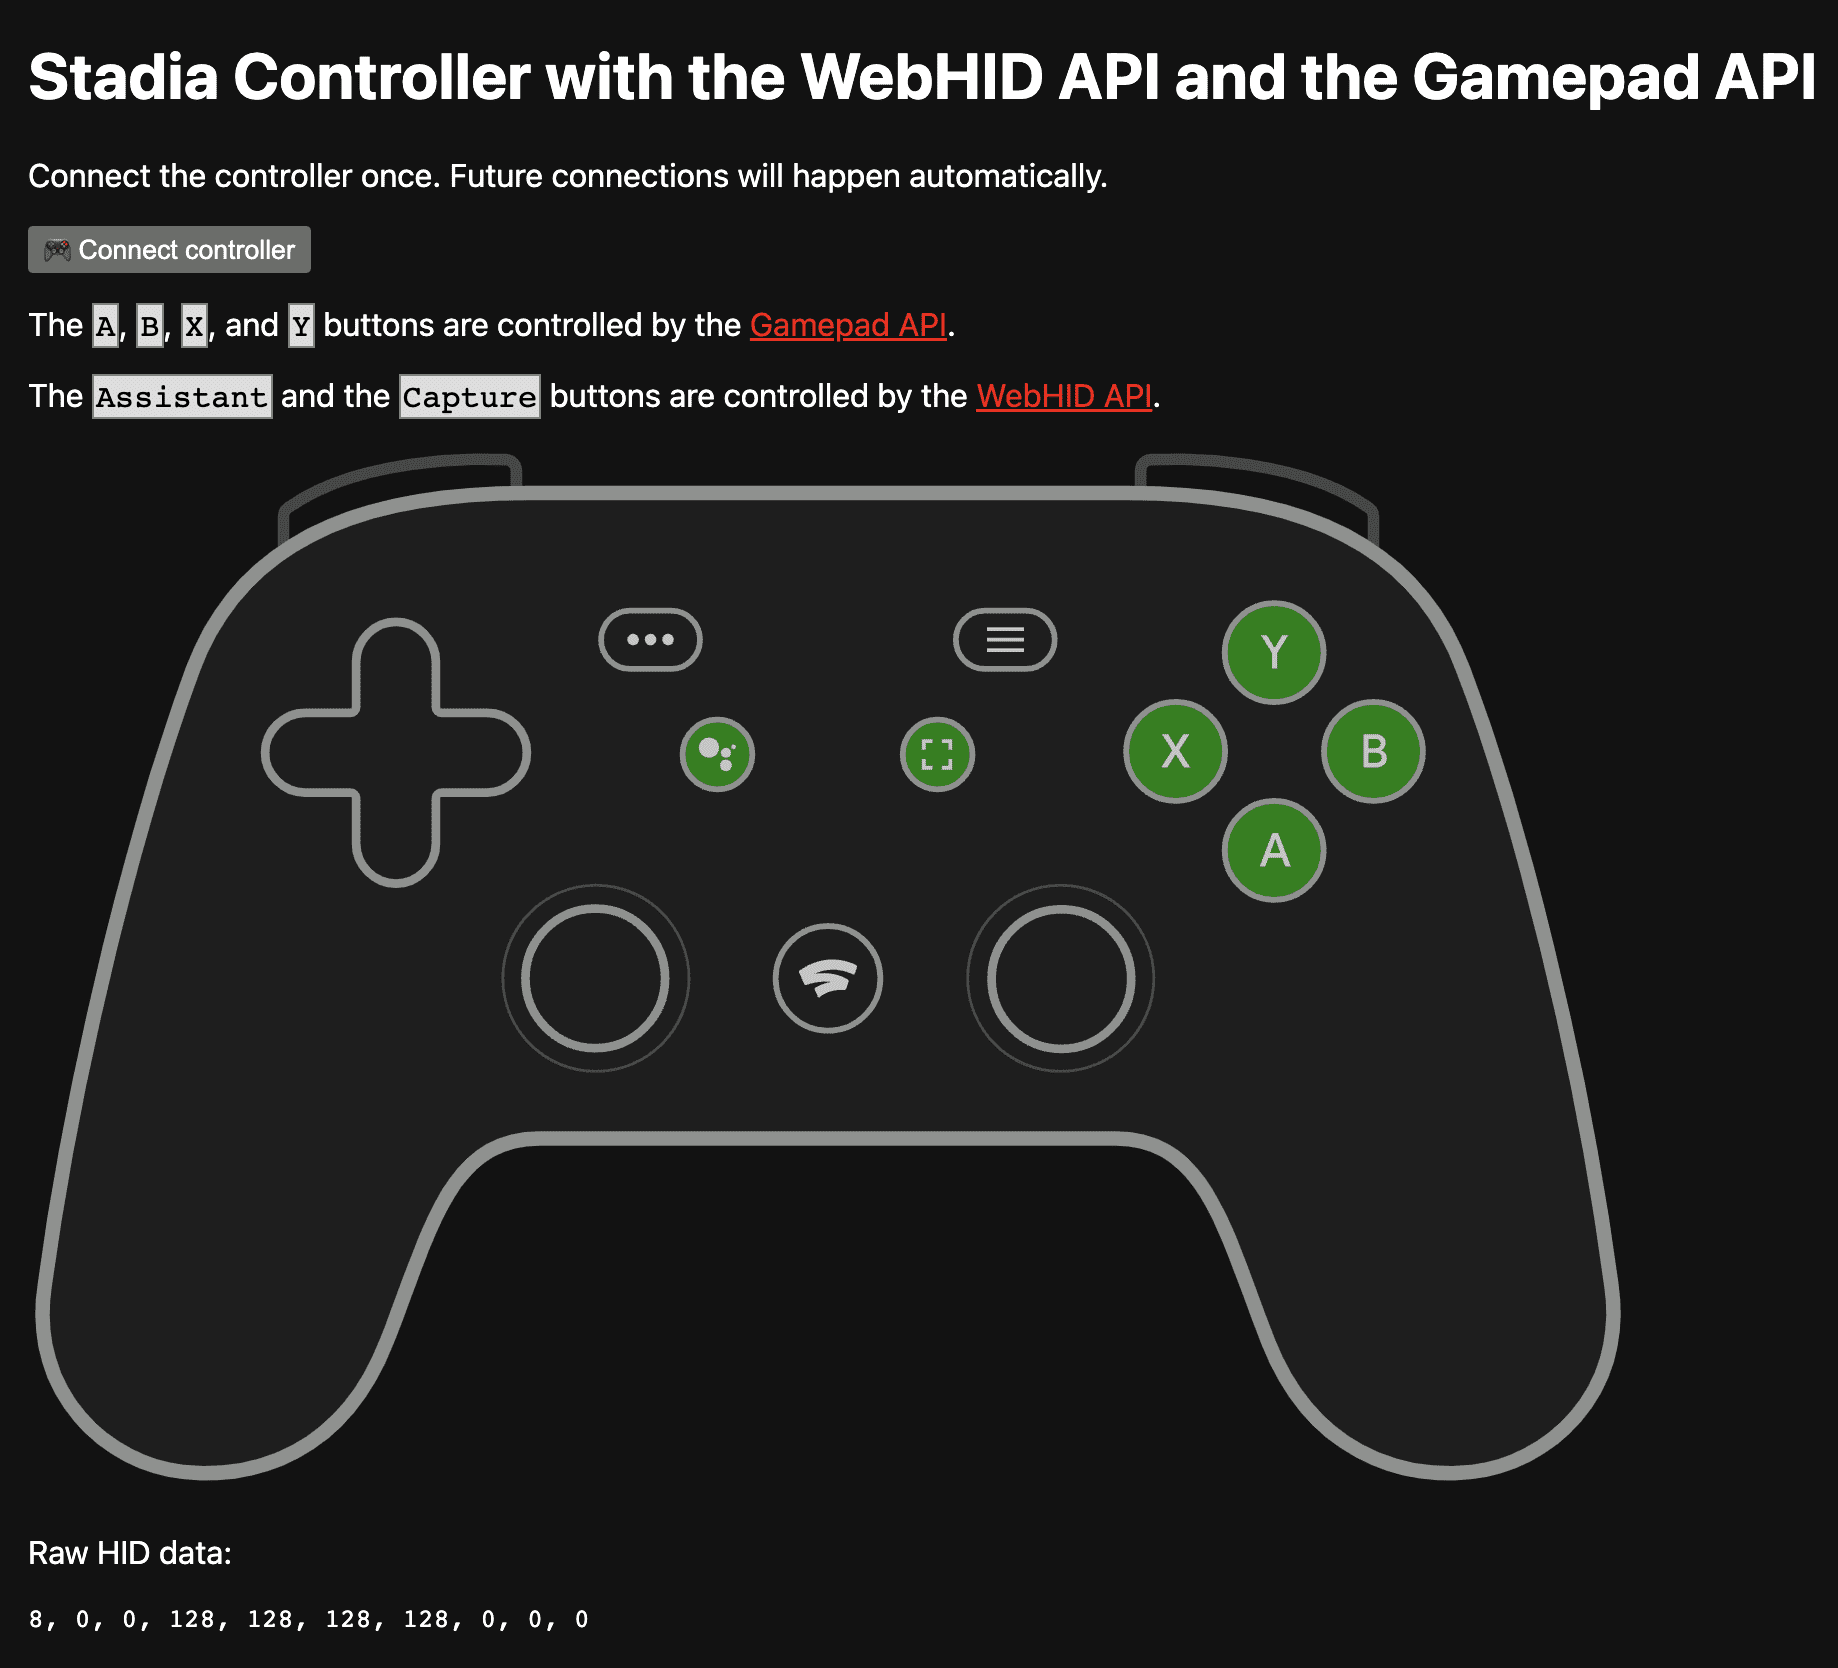 Die Demo-App unter https://stadia-controller-webhid-gamepad.glitch.me/ mit den Schaltflächen A, B, X und Y, die von der Gamepad API gesteuert werden, sowie die Assistant- und die Aufnahmetaste, die von der WebHID API gesteuert werden.